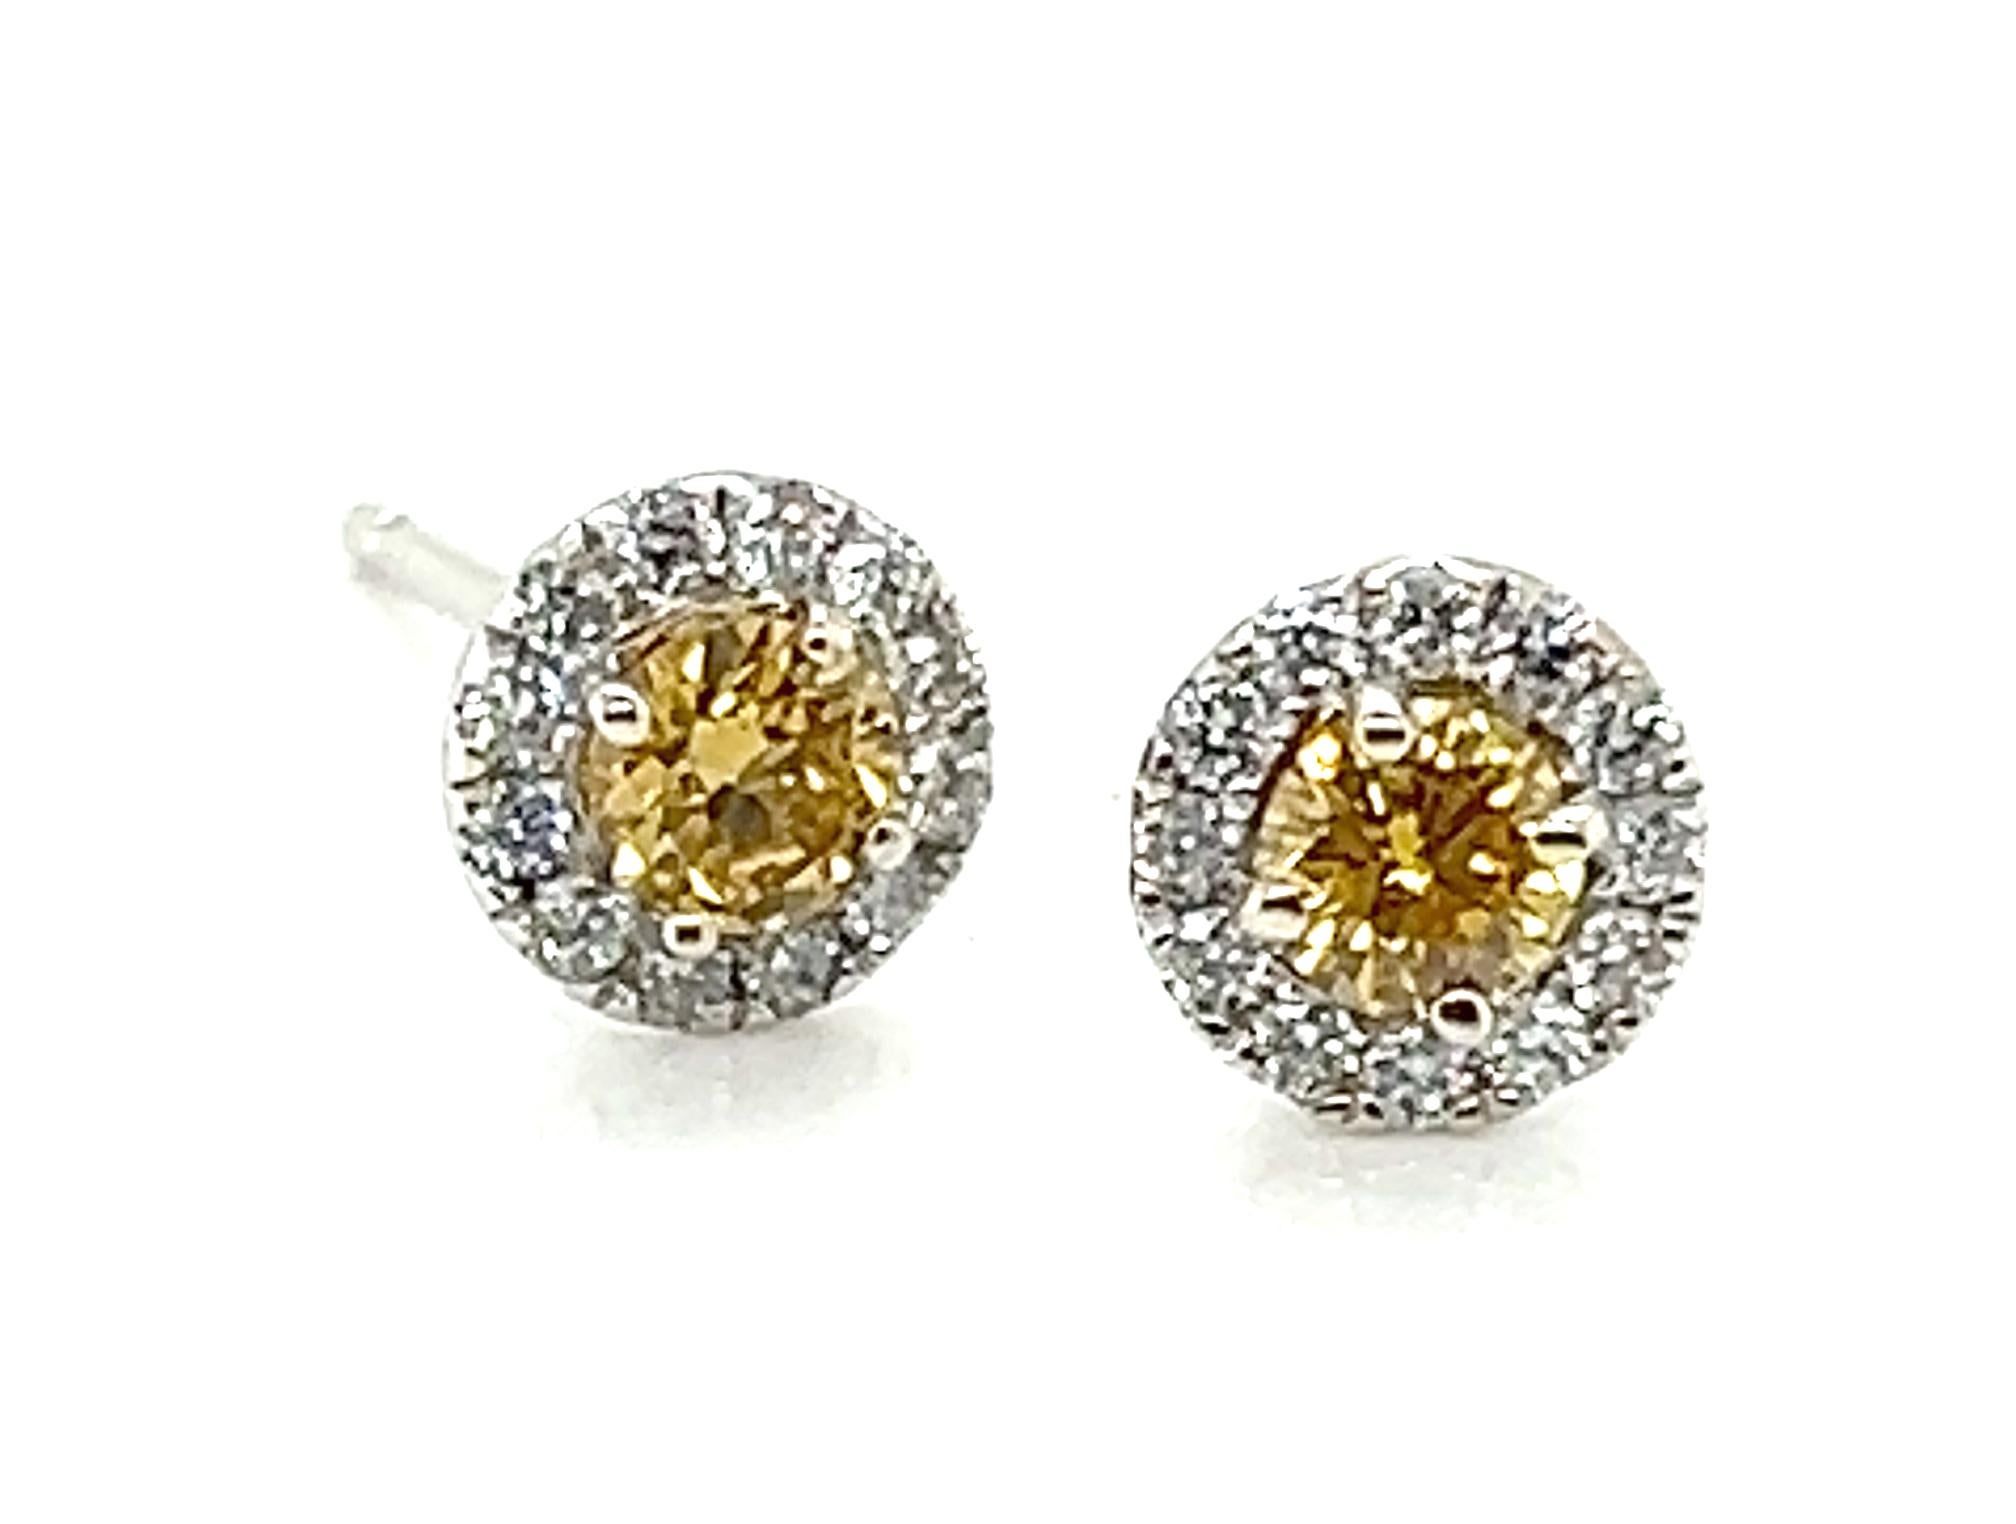 GIA Fancy Orangy Yellow Diamond Halo Stud Earrings .83ct Round Brilliant Brand New 14K


Mit zwei glamourösen echten GIA-zertifizierten bräunlich-orangenen gelben runden Diamanten im Brillantschliff 

Halo-Ohrringe mit faszinierendem Rundschliff und